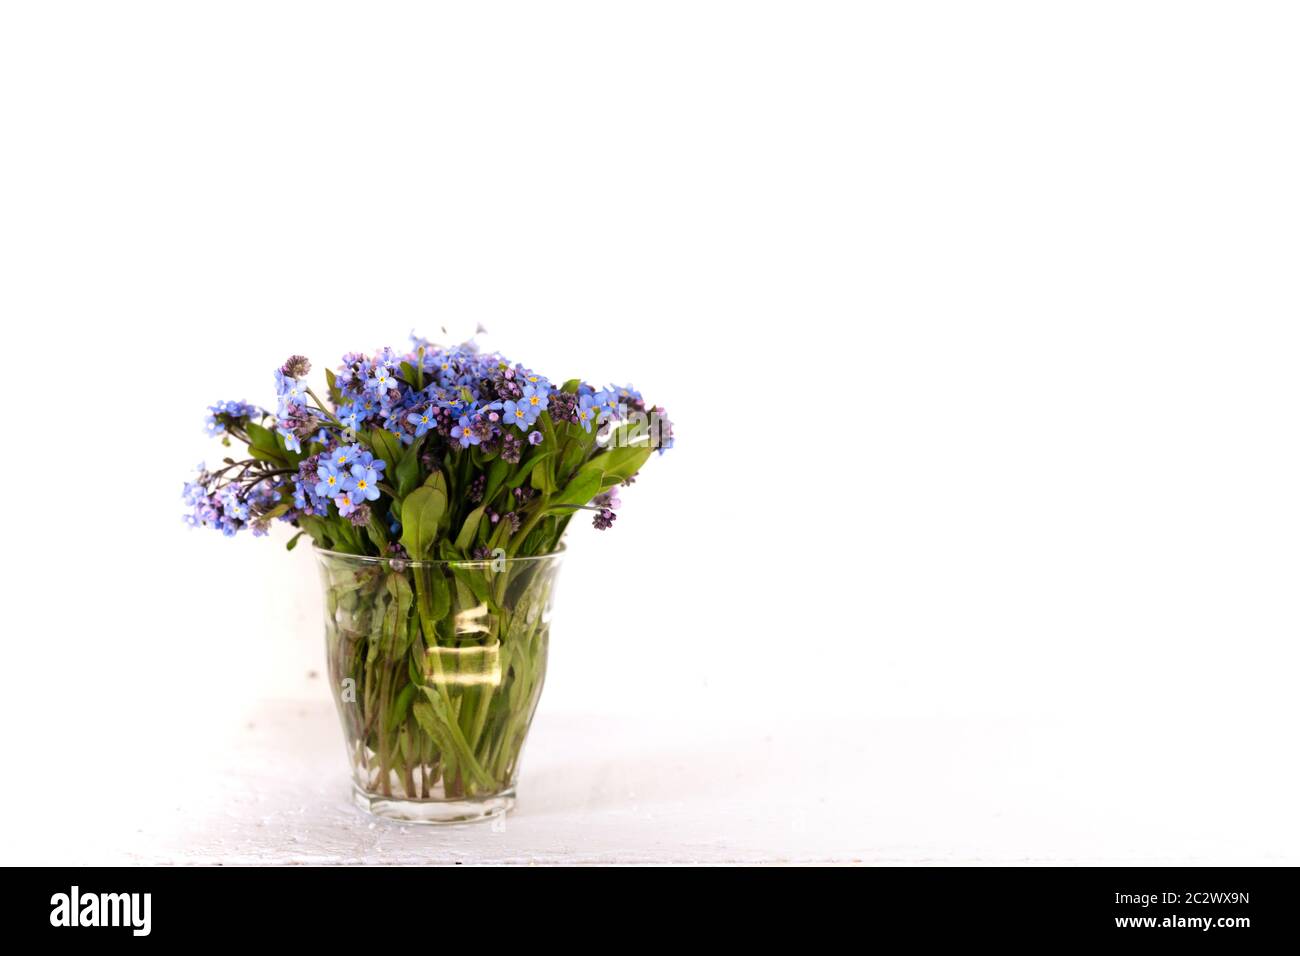 Fleurs sauvages bleues dans une tasse de verre contre un mur blanc. Fond blanc. Oubliez-moi non. Banque D'Images